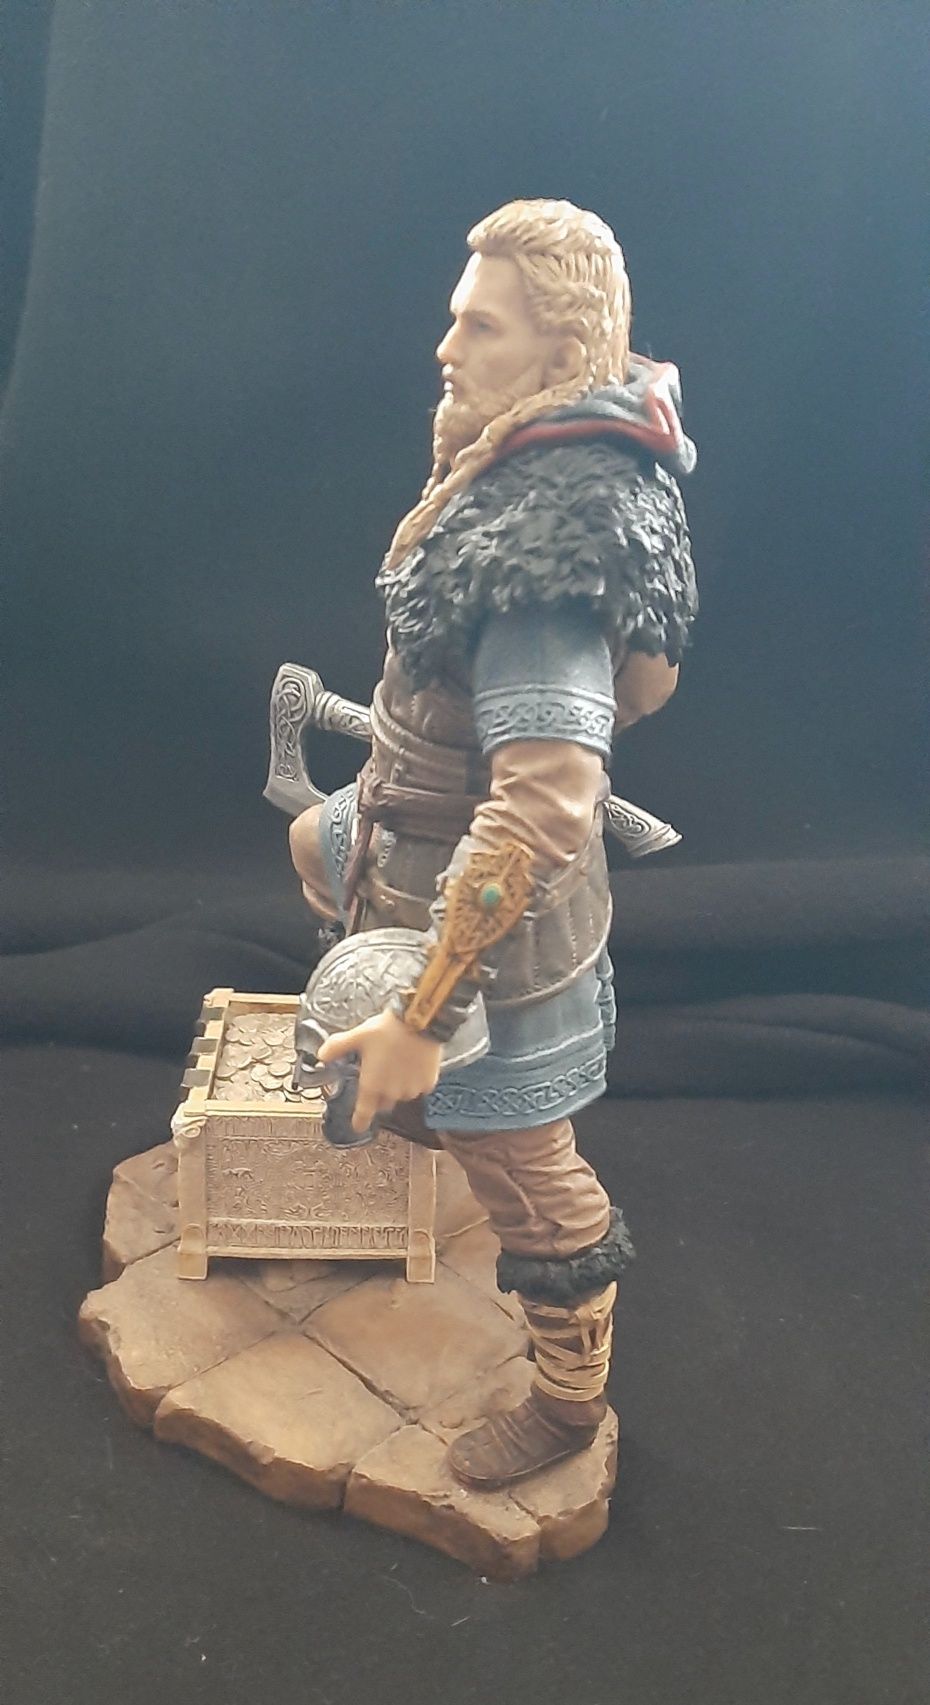 Vendo Estátua/Figura


Assassin's Creed Valhalla (Eivor)
25 cm